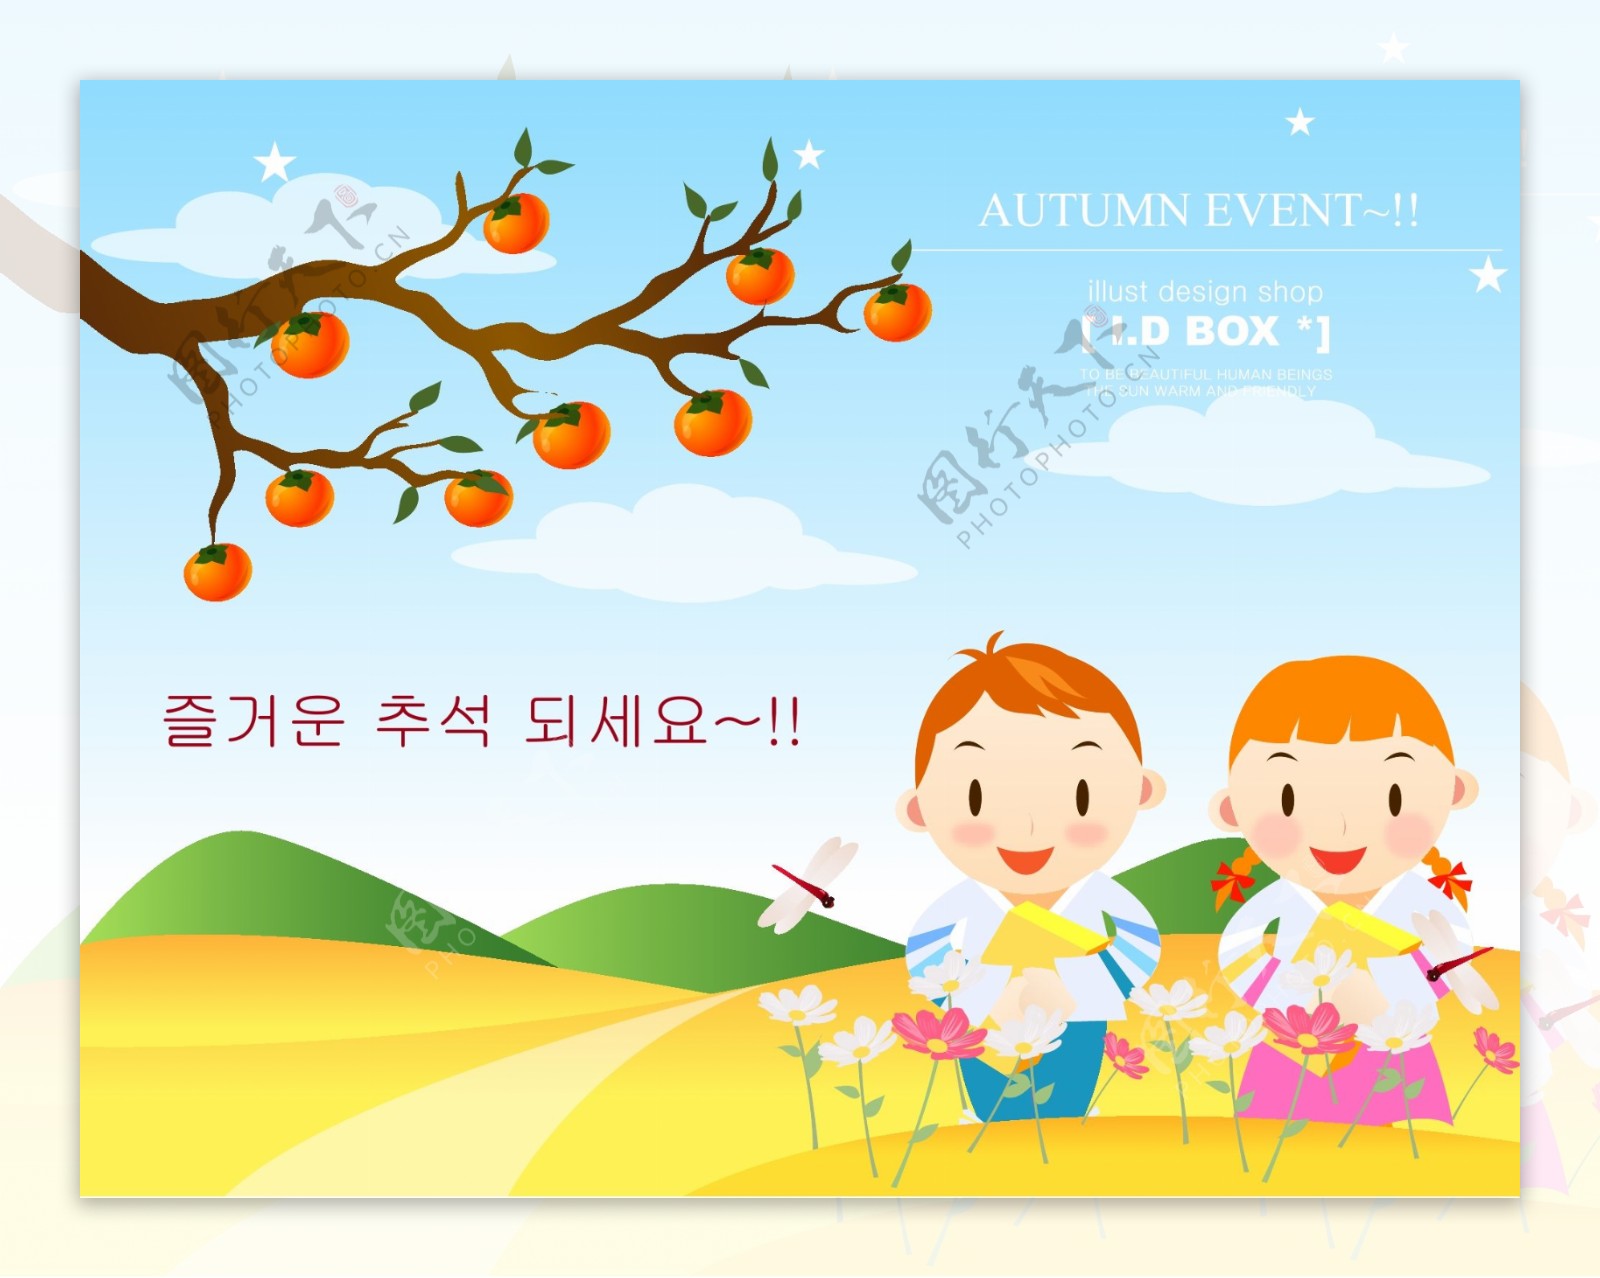 韩国自然风景秋天风景素材矢量AI格式0146